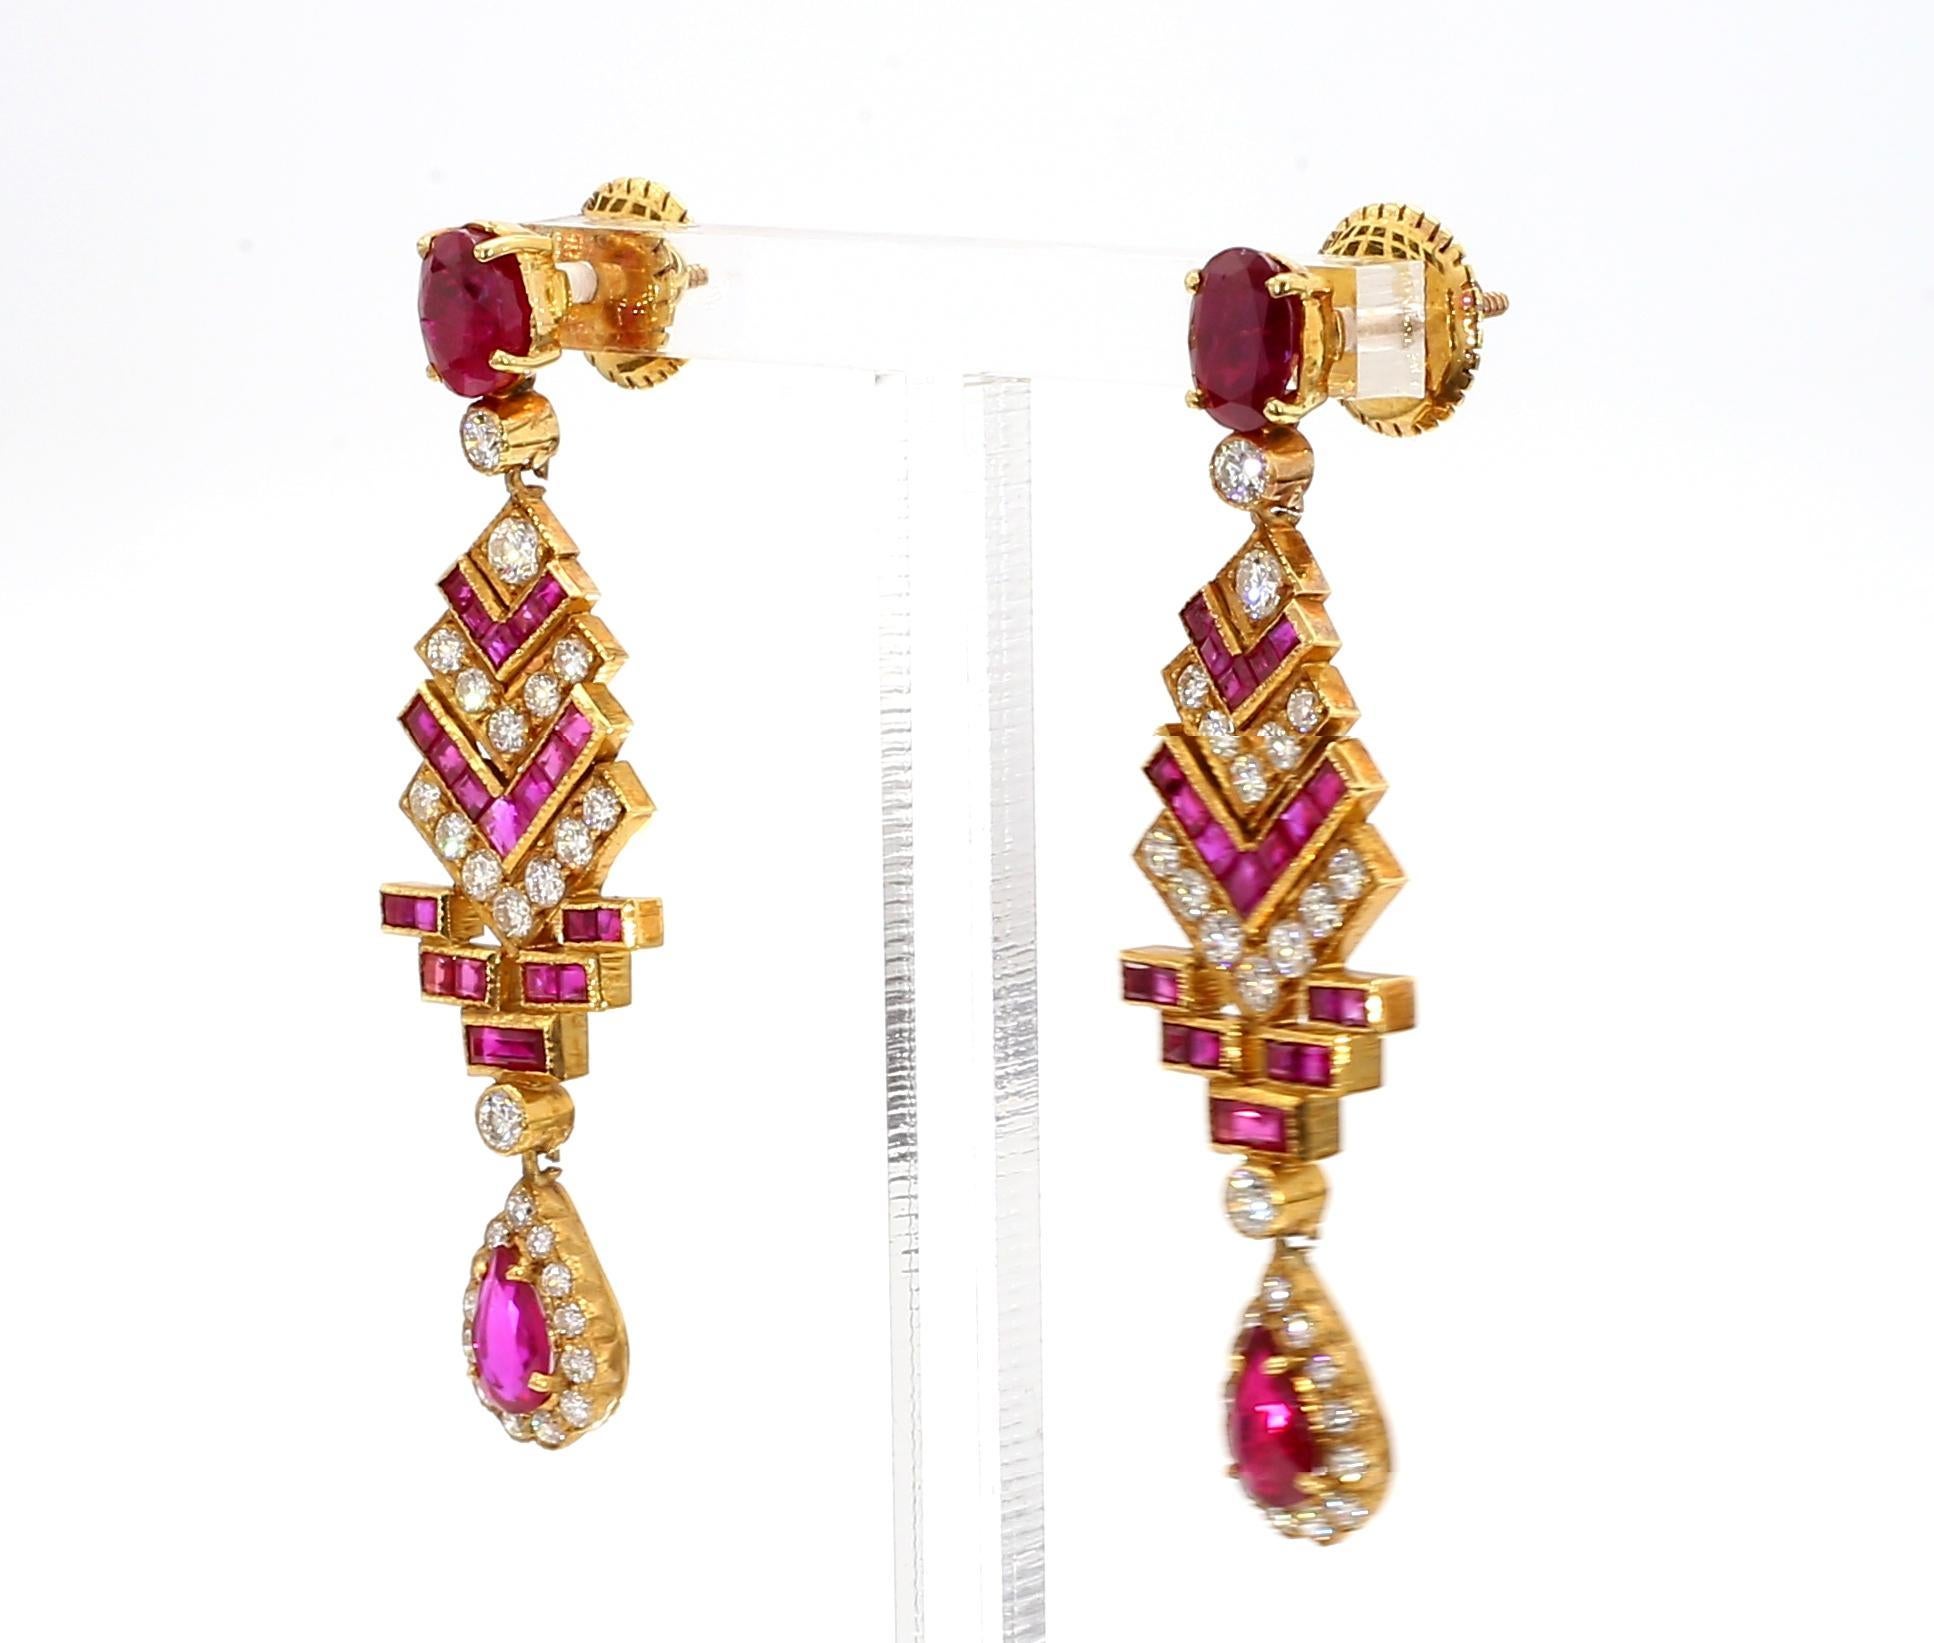 Die Rubinohrringe im Art-Déco-Stil sind ein atemberaubendes und elegantes Accessoire, das die Essenz der Roaring Twenties einfängt. Diese Ohrringe sind mit wunderschönen tiefroten Rubinen besetzt, die in einem geometrischen und symmetrischen Design